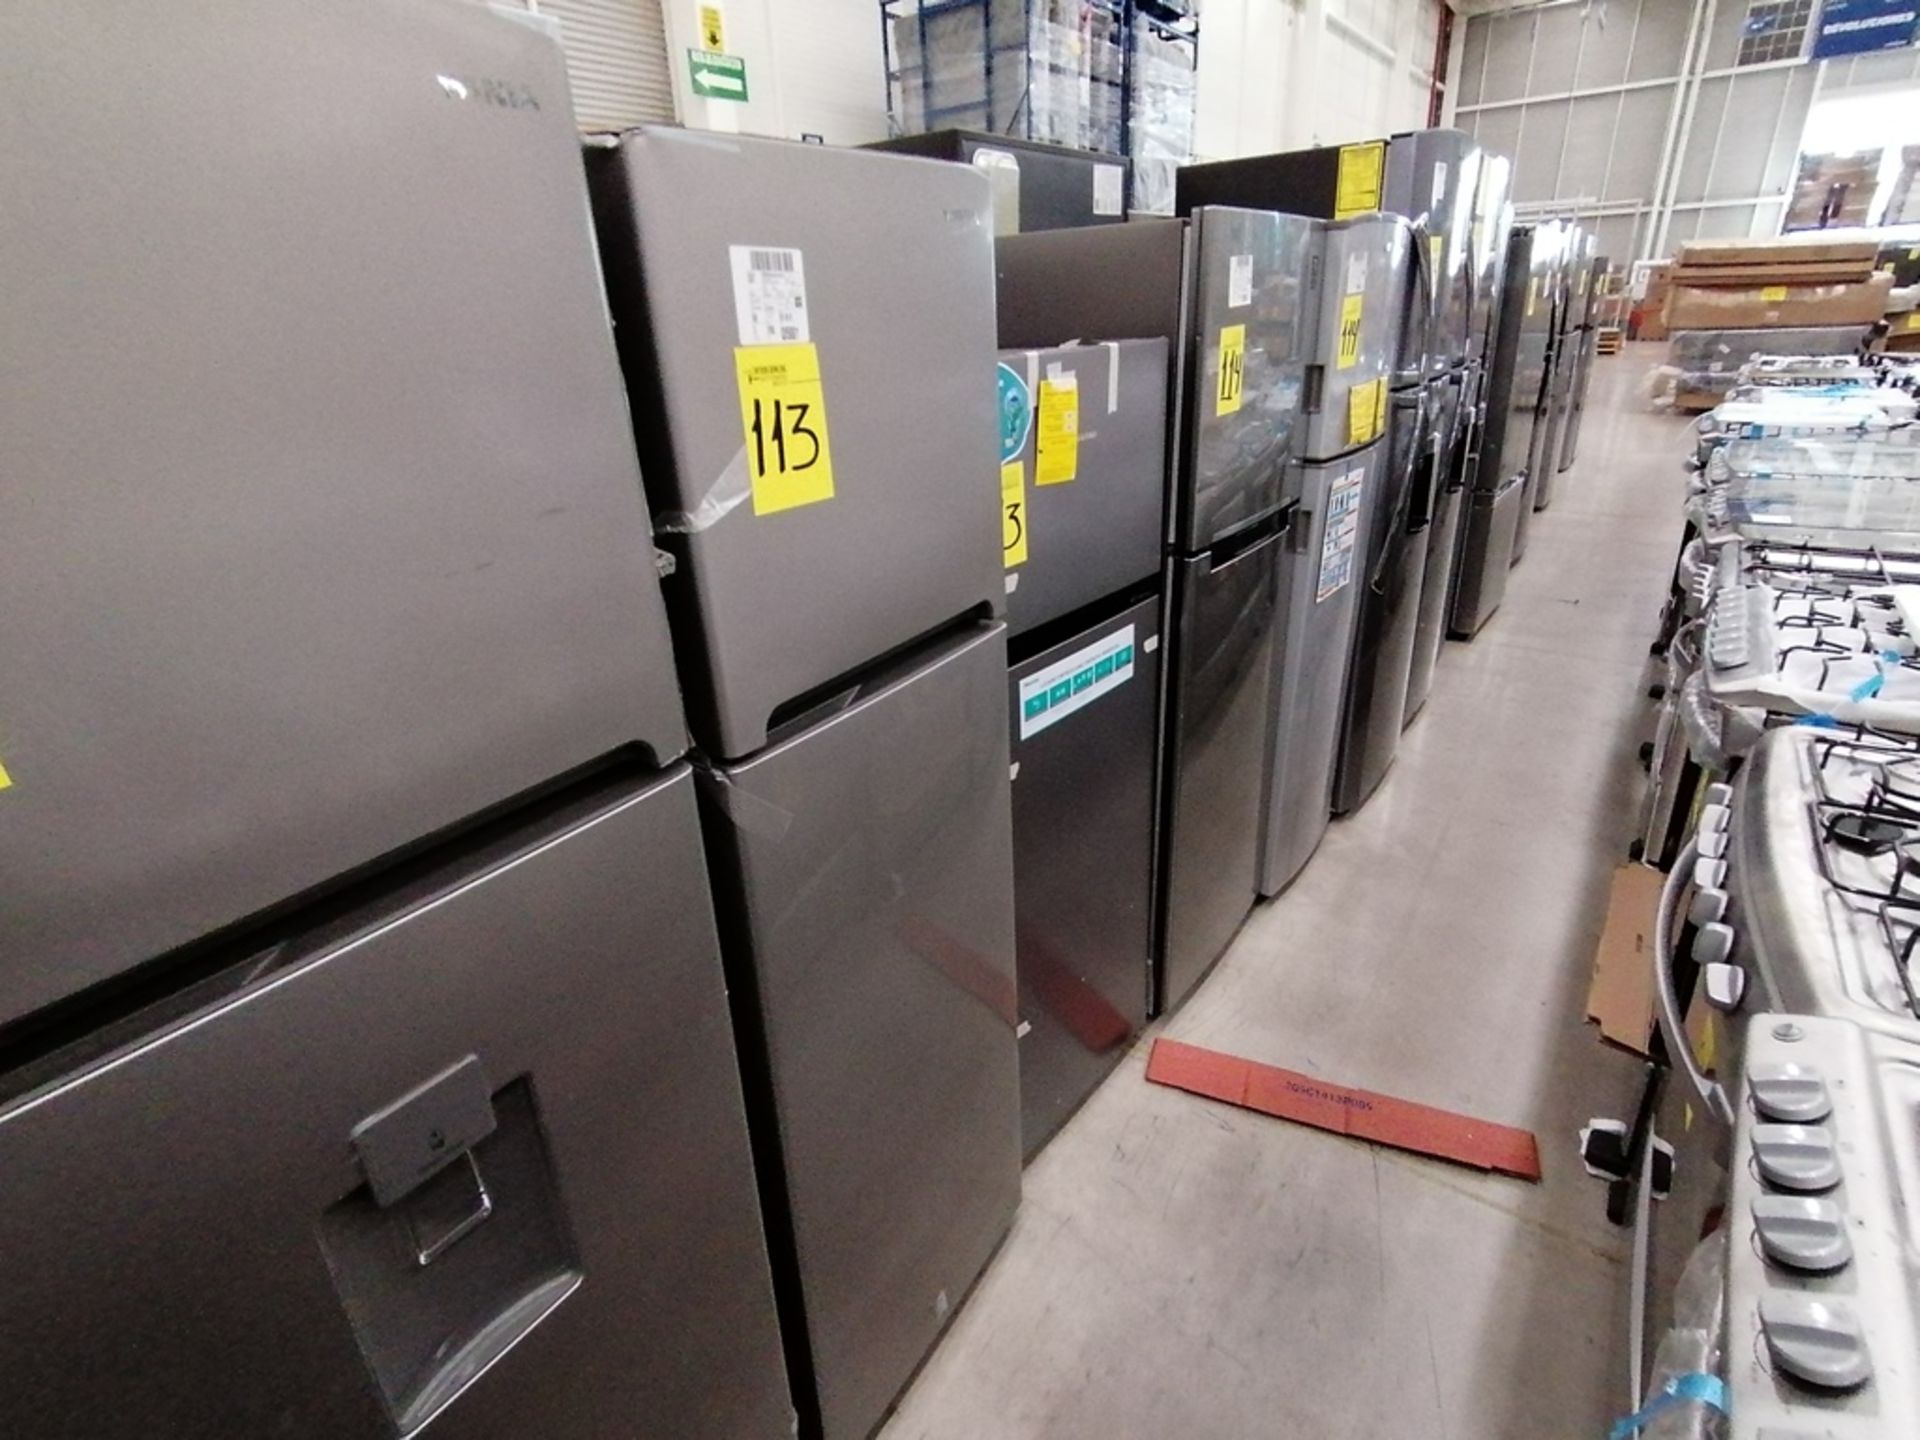 Lote de 2 refrigeradores incluye: 1 Refrigerador, Marca Winia, Modelo DFR25210GN, Serie MR21ZN08401 - Image 9 of 15